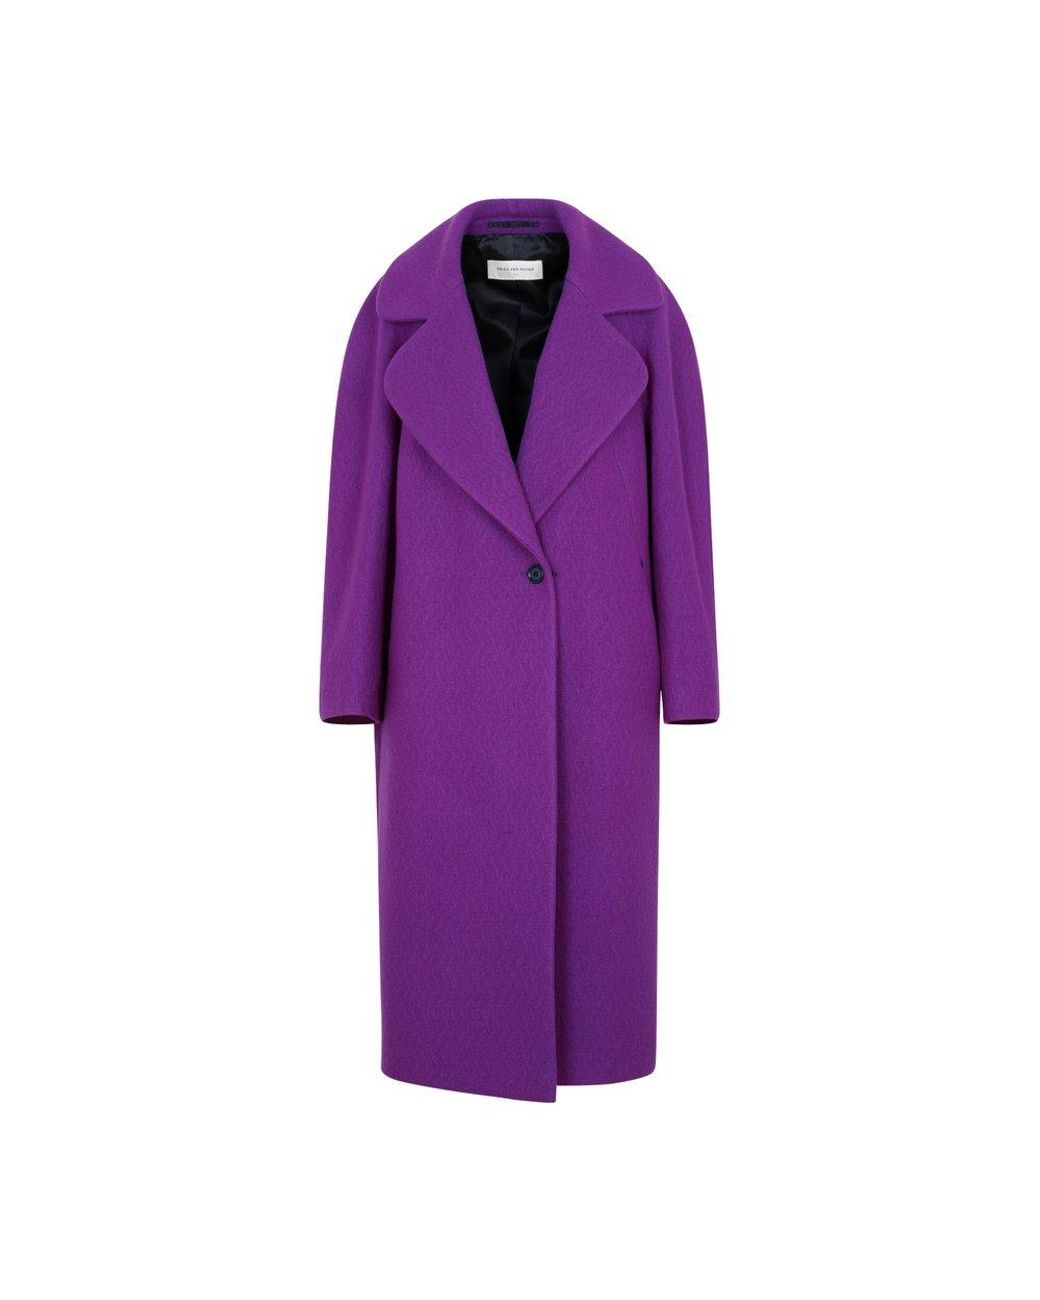 Dries Van Noten Wool Coat in Purple | Lyst